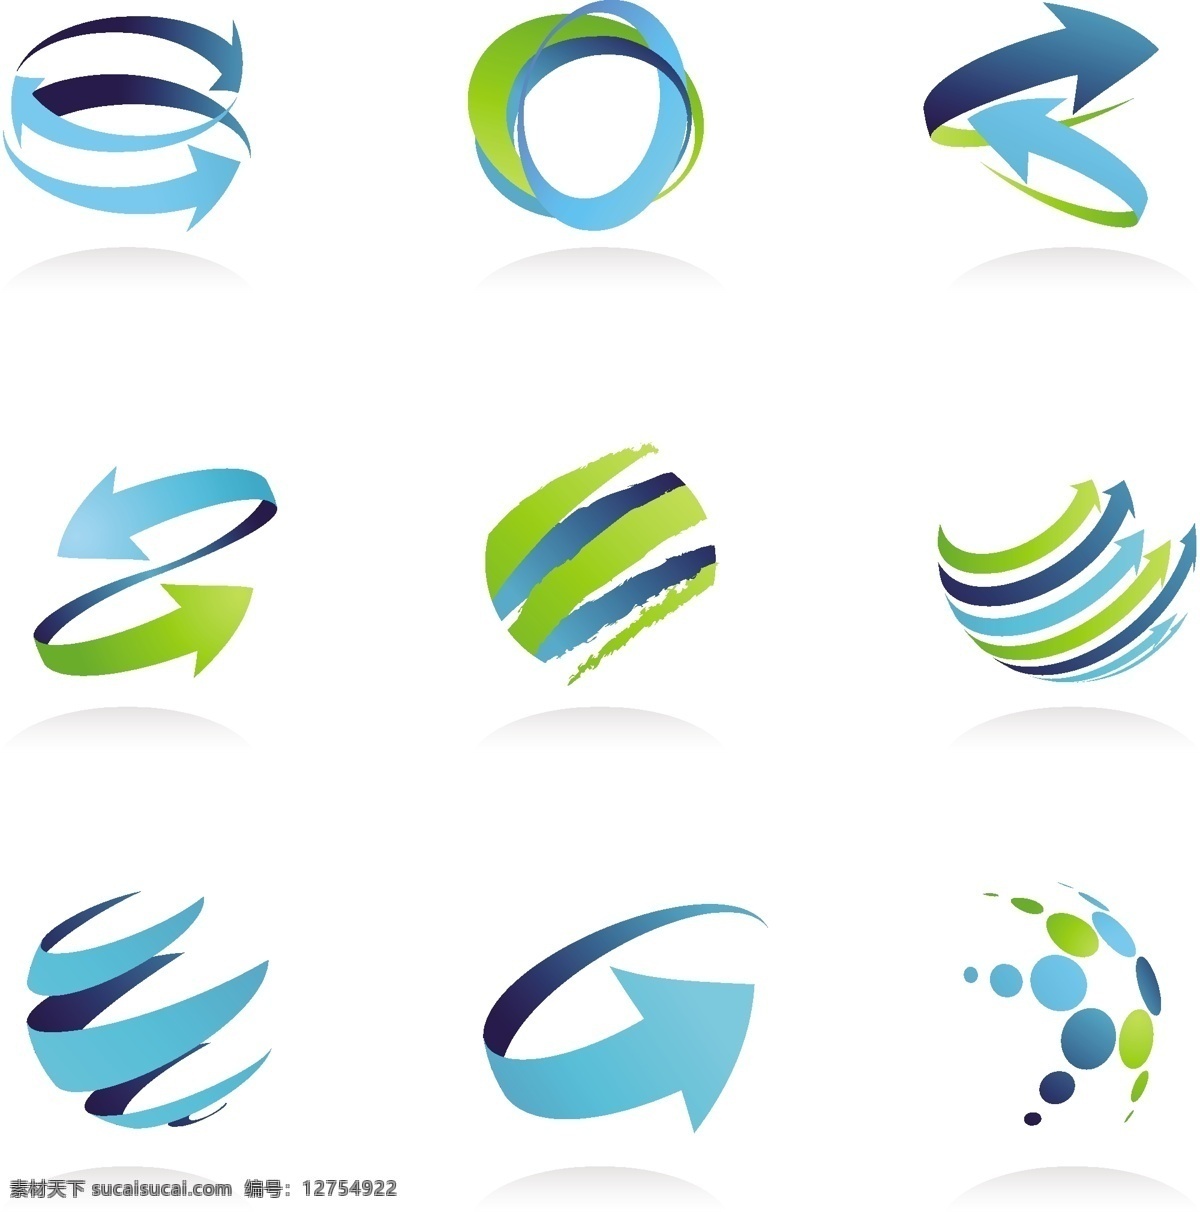 箭头 logo 创意 logo图形 标志设计 商标设计 企业logo 公司logo 标志图标 矢量素材 白色